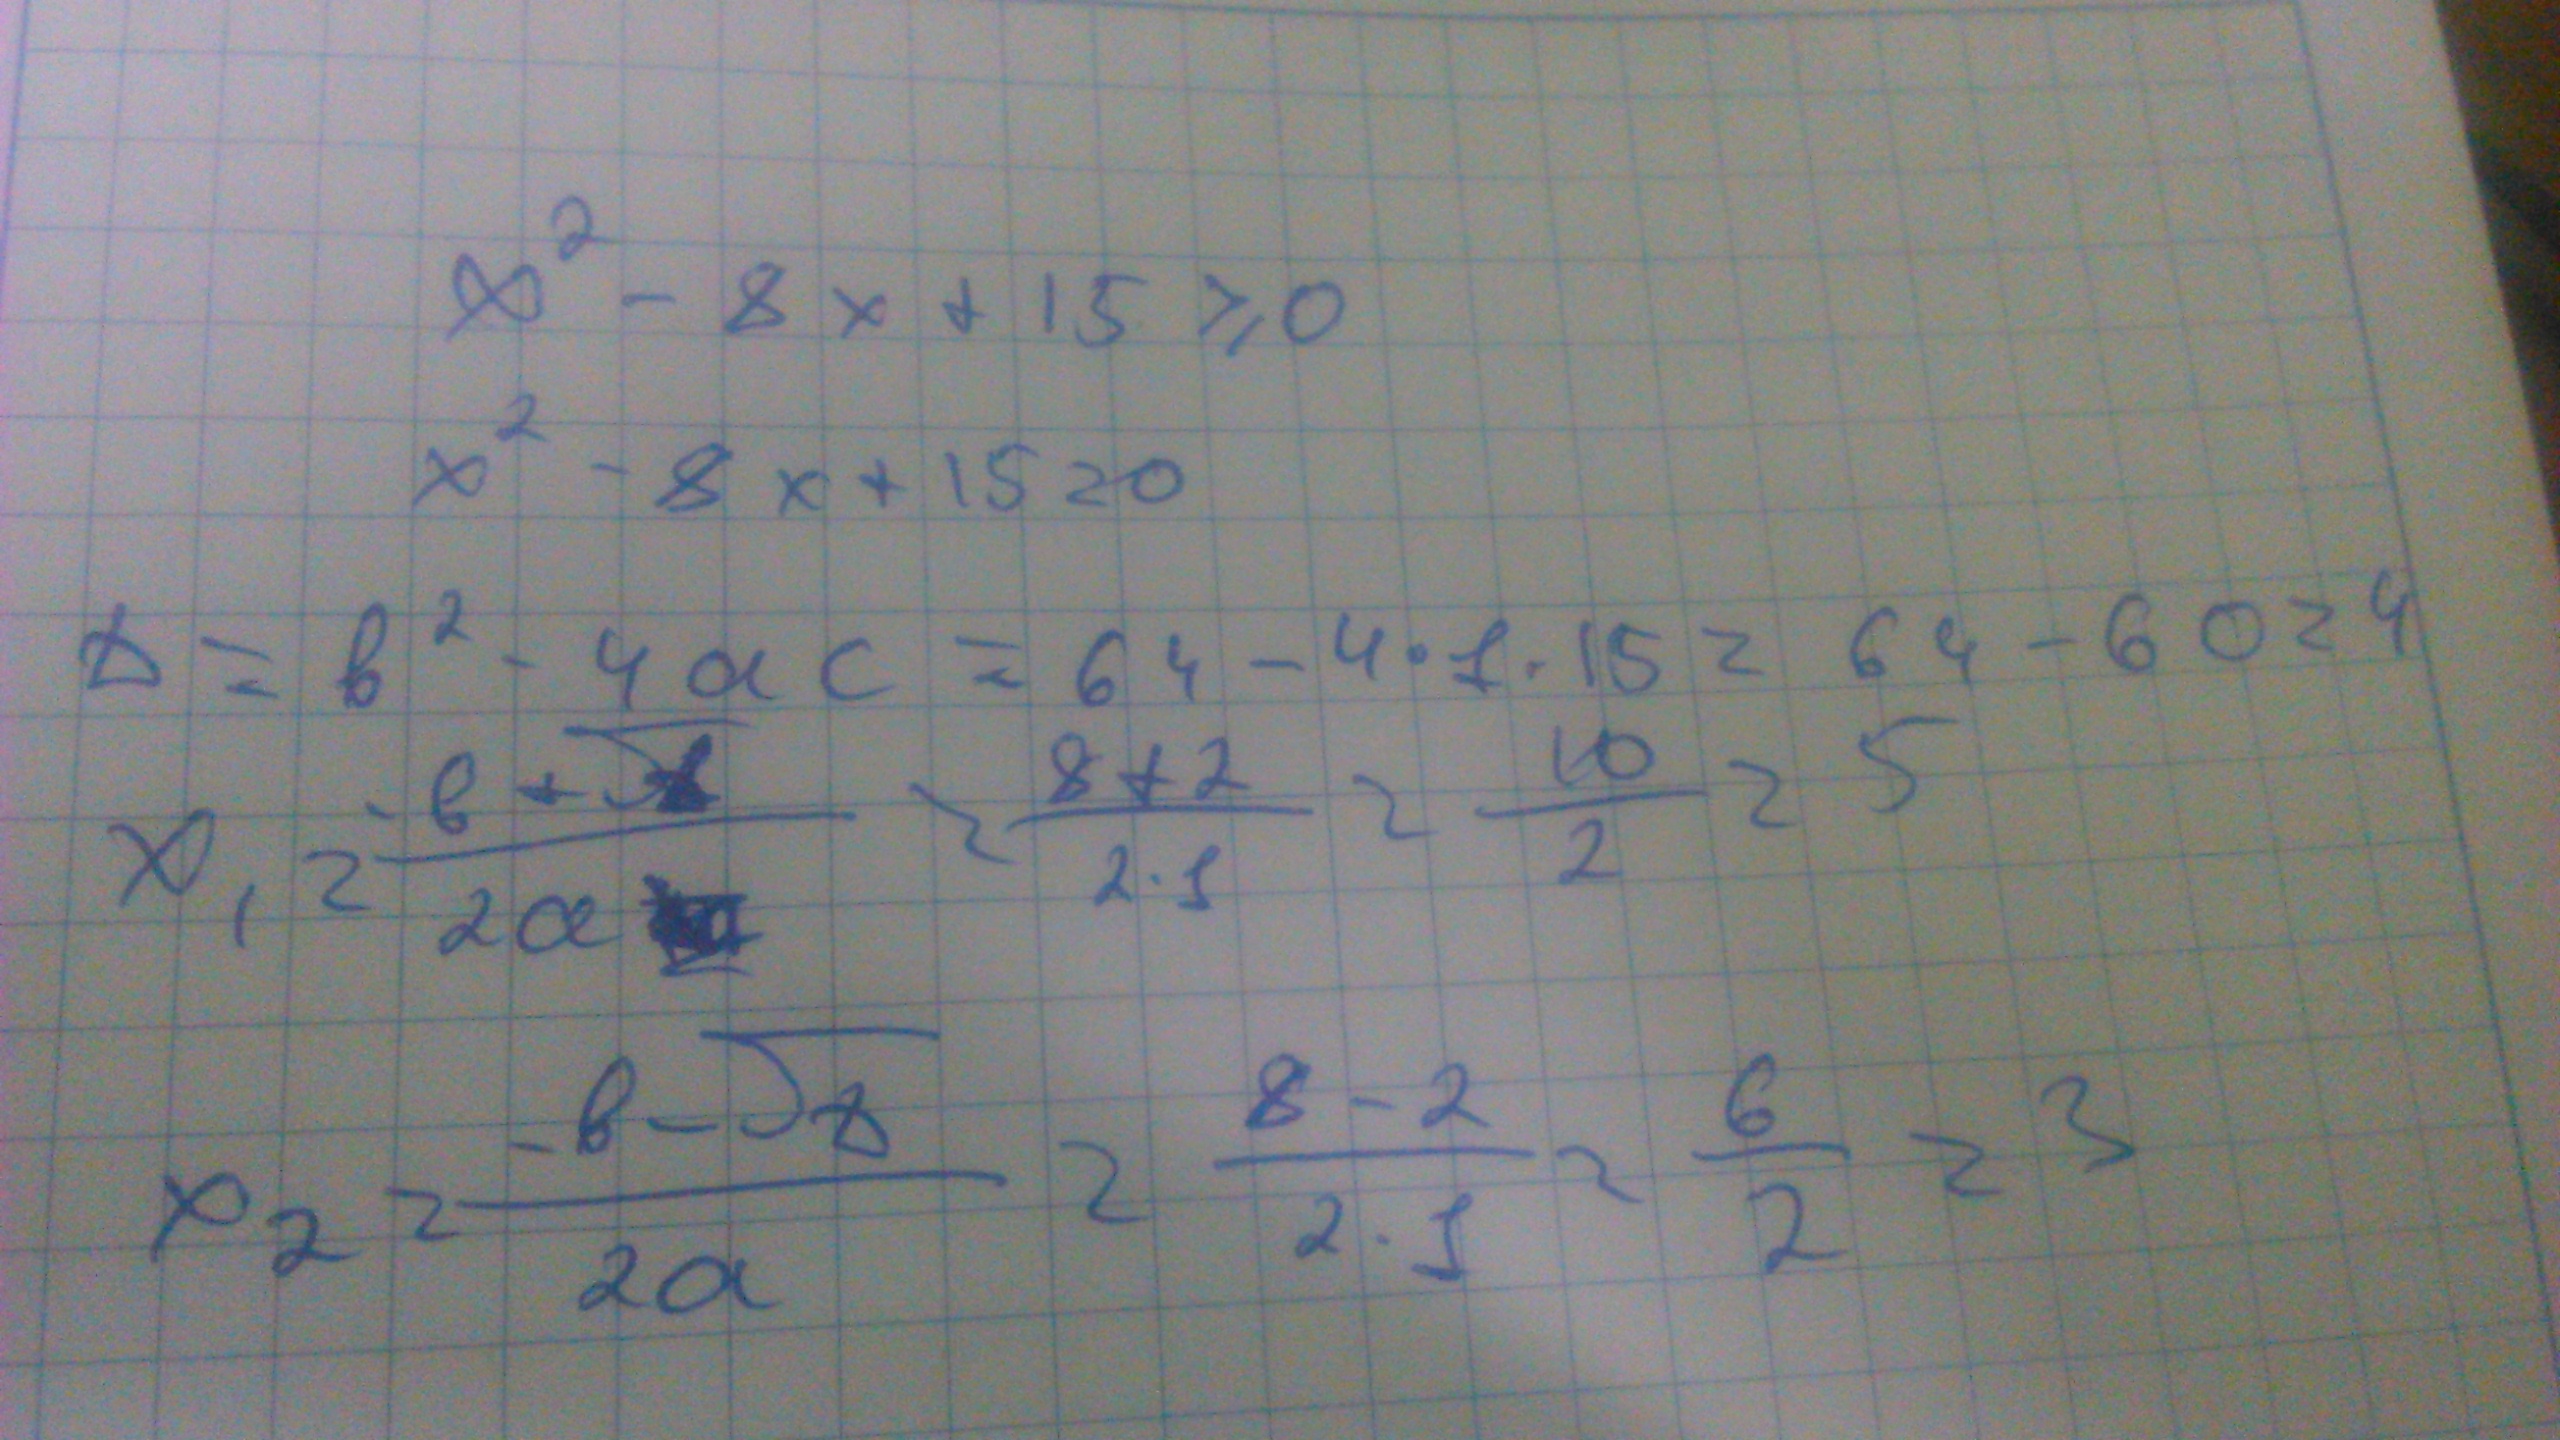 X2 8x 15 x 3. 2(Х+8)=2х+15. Х2+8х+15. Х 0 2х 8/15. Х2-2х-15=0.